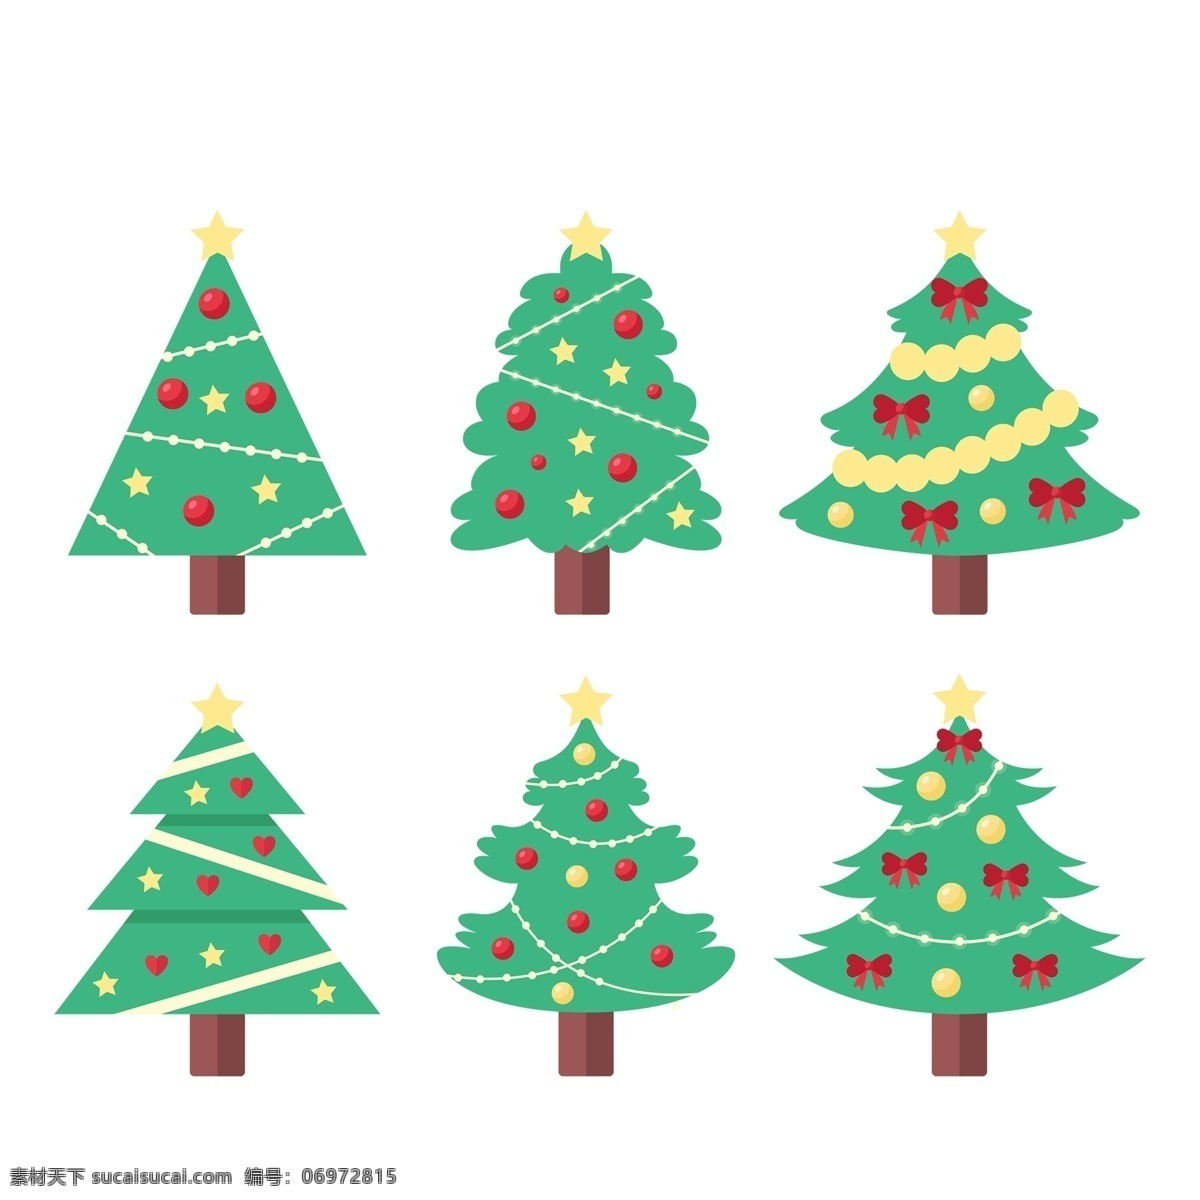 红 绿色 卡通 圣诞树 免 抠 透明 图 圣诞树装饰图 圣诞树元素 圣诞节树 圣诞元素 节日元素